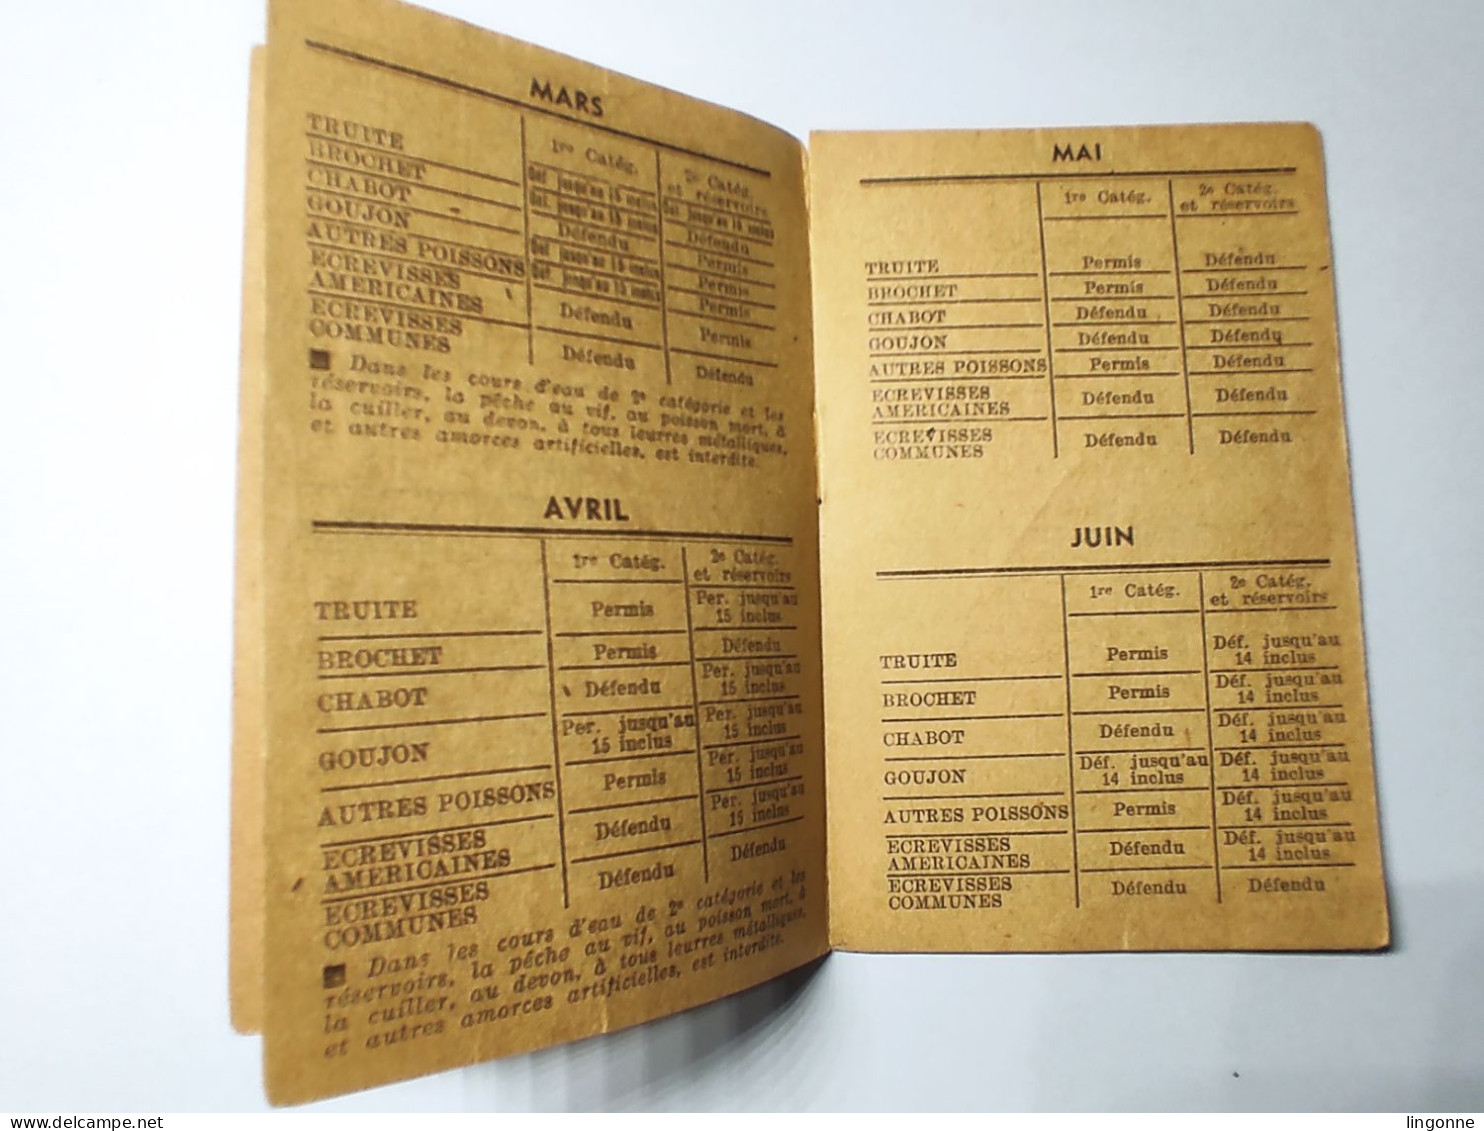 1963 Calendrier De La Pêche En Haute Marne 52 -  Classement Des Cours D'Eau, Poissons. Imp De L'EST CHAUMONT - Small : 1961-70